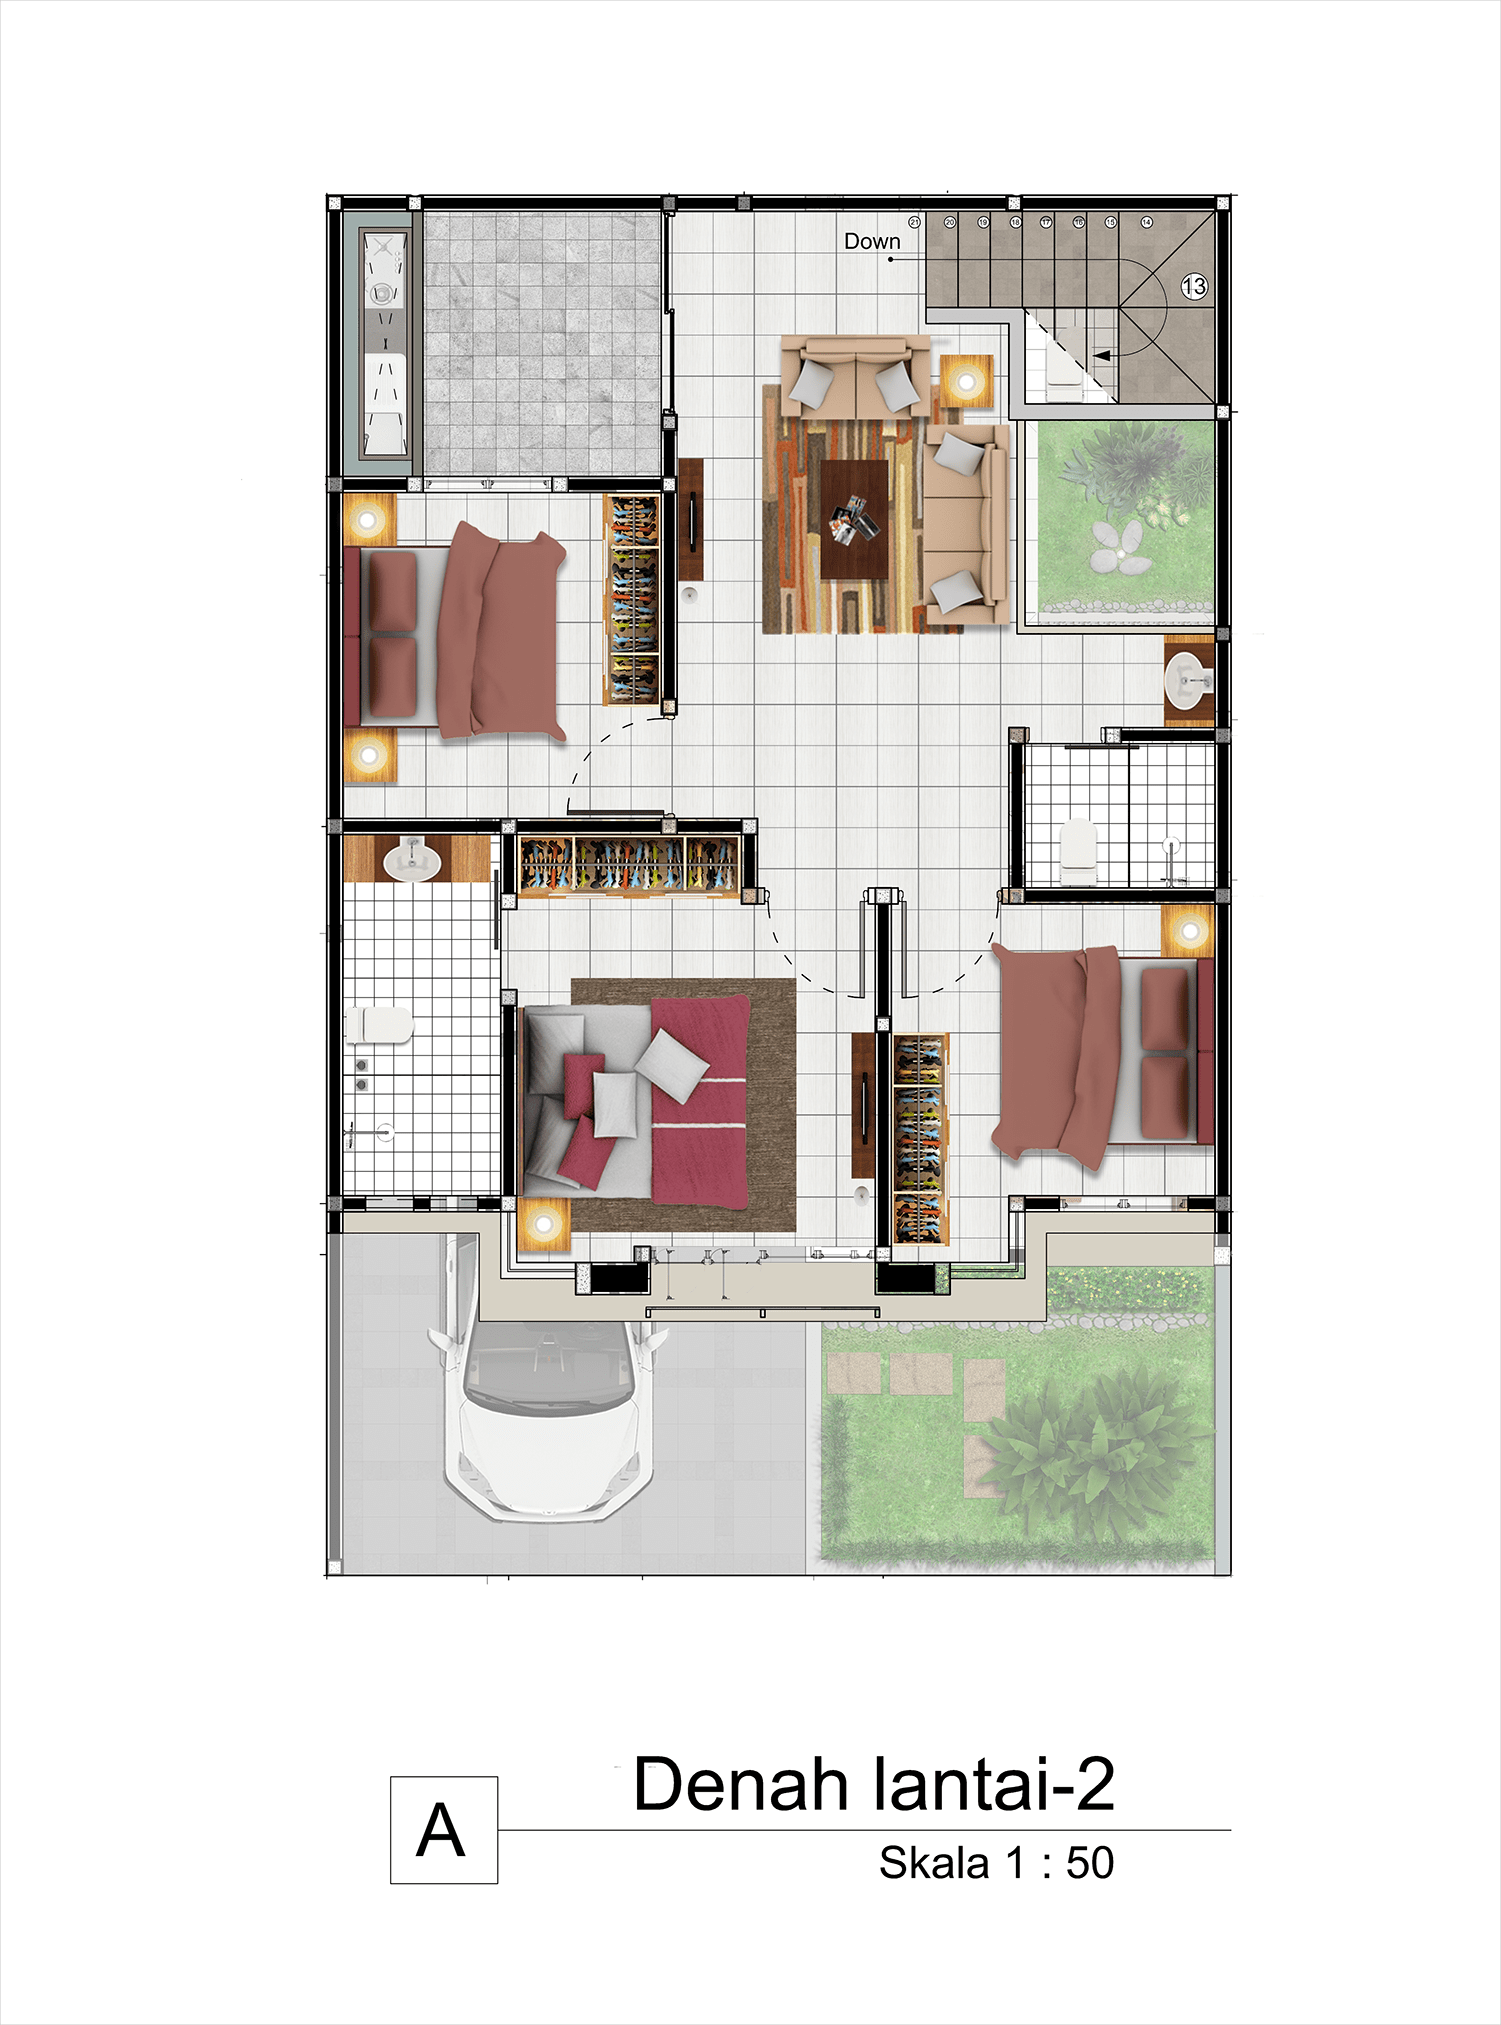 gambar denah layout lantai dua rumah arsitektur modern tropis kontemporer